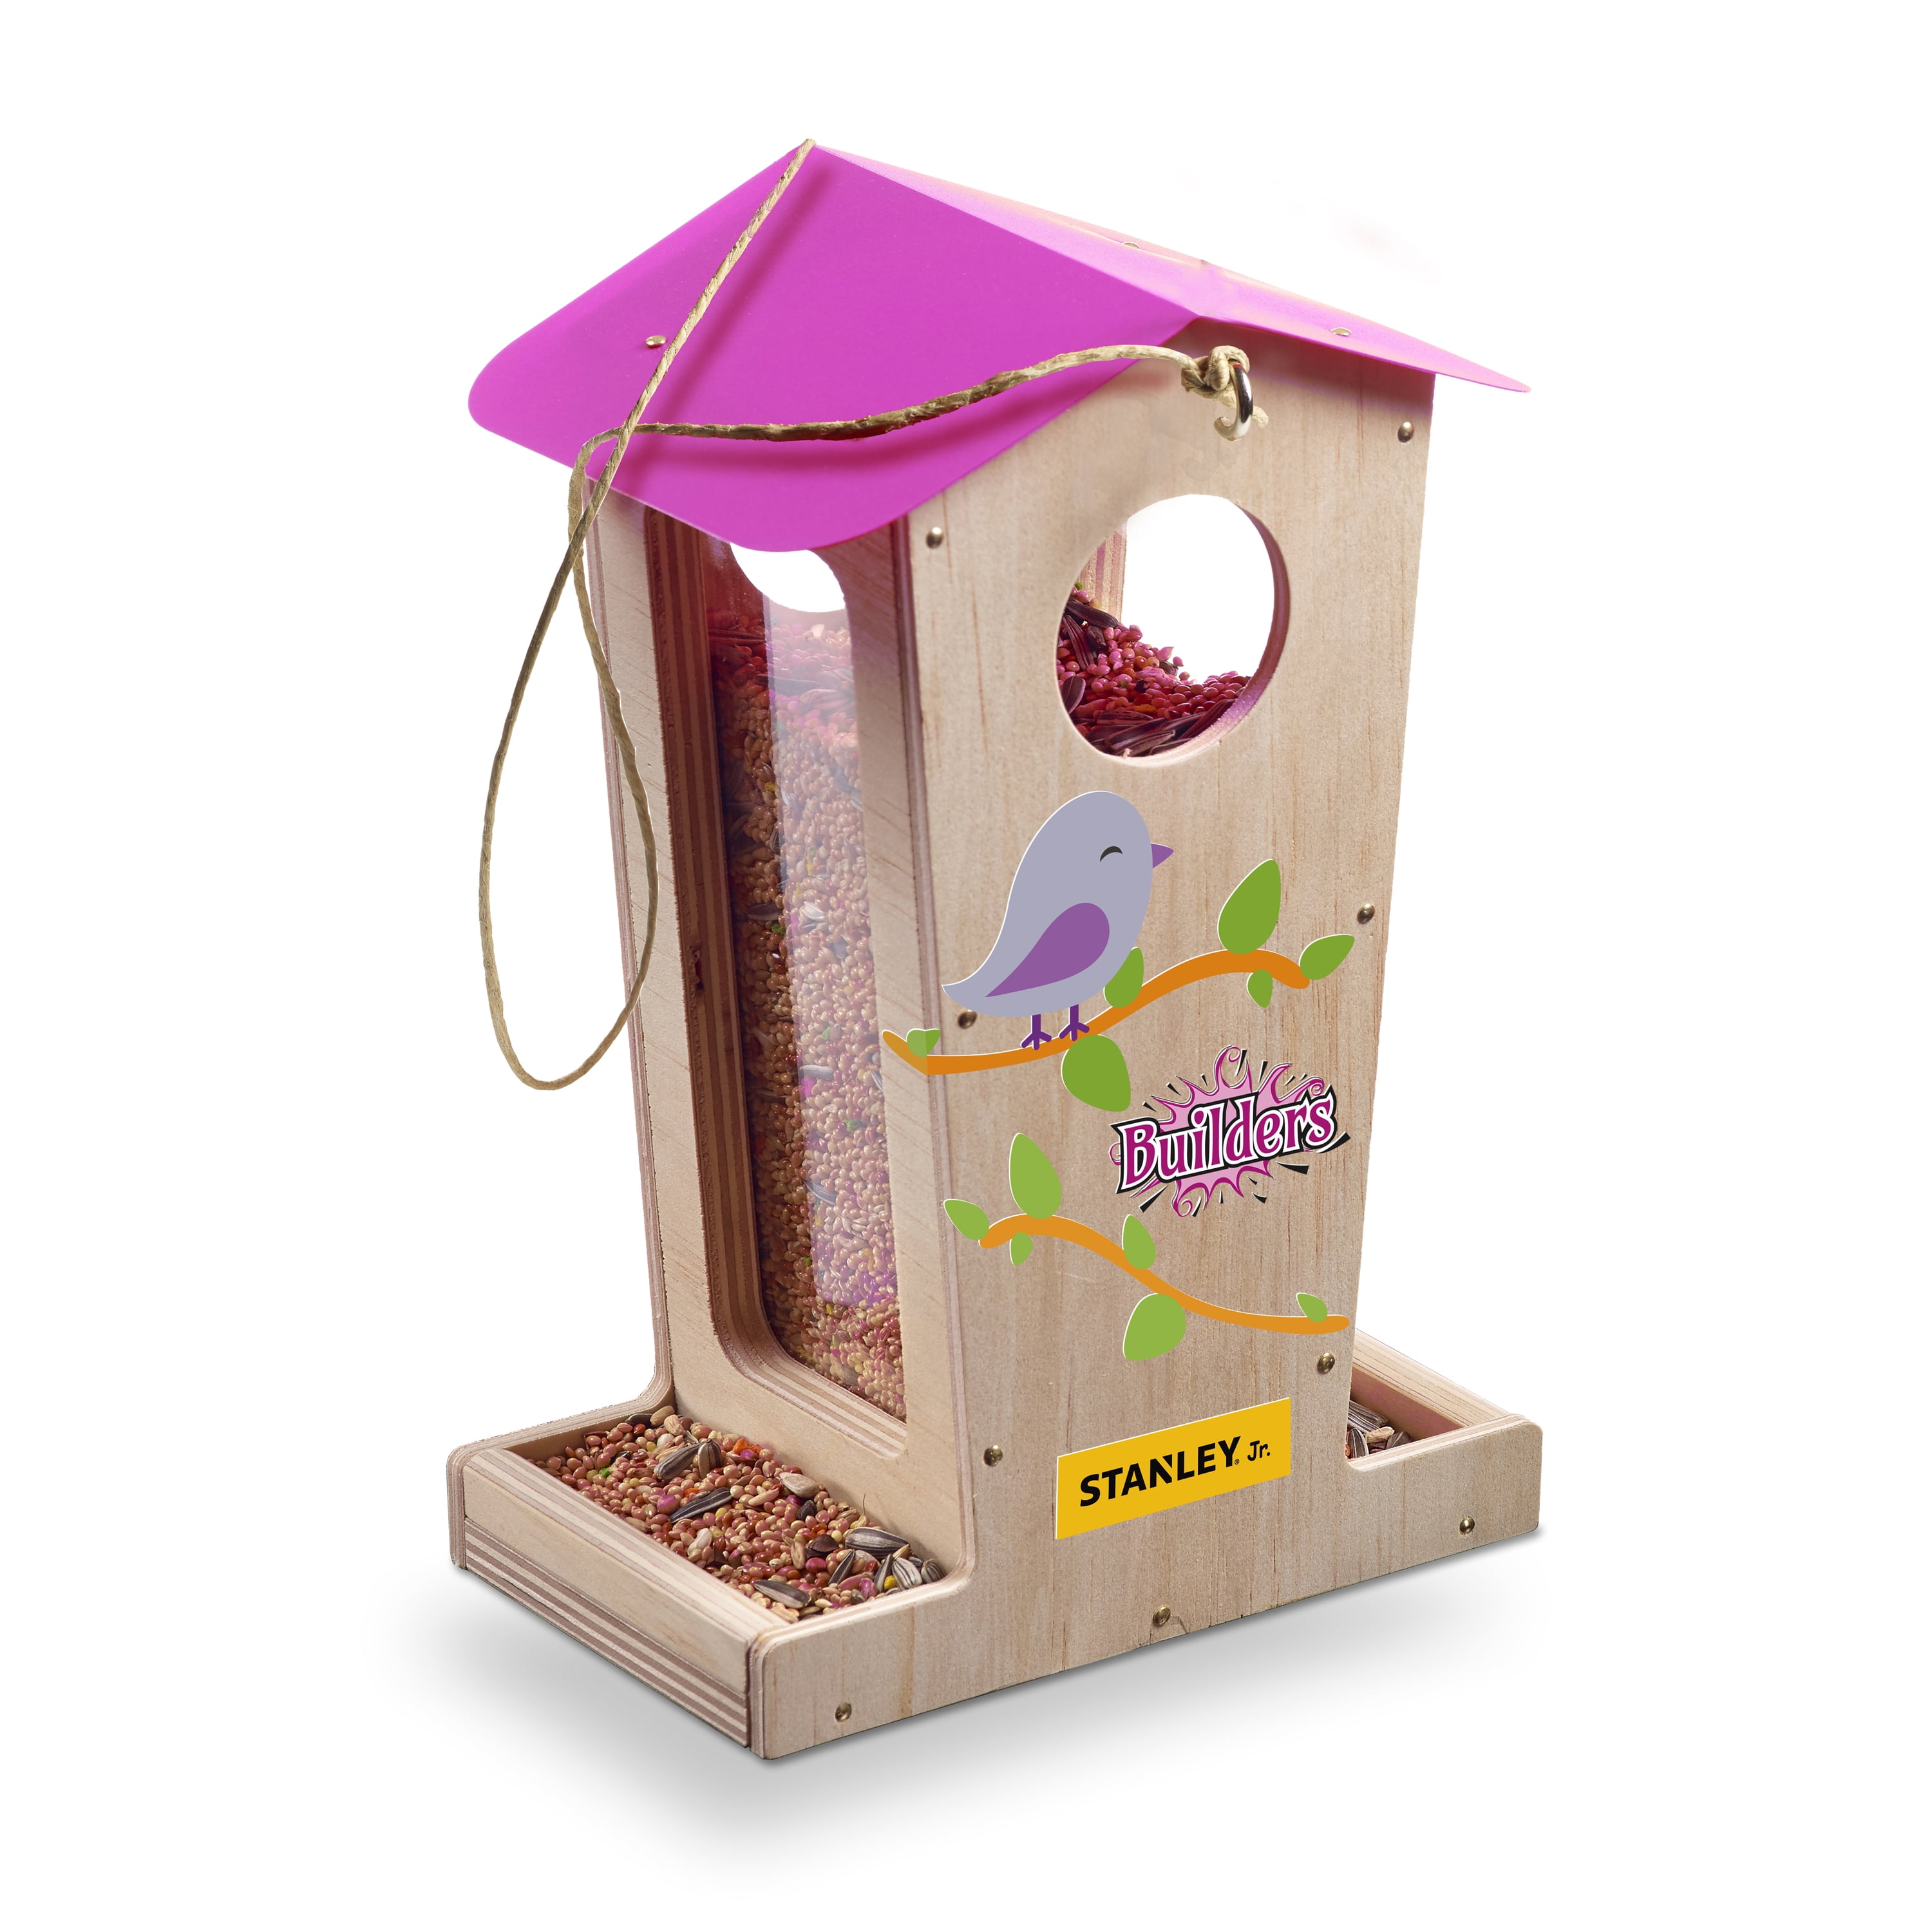 STANLEY Jr - Tall Bird Feeder DIY Kit for Kids 